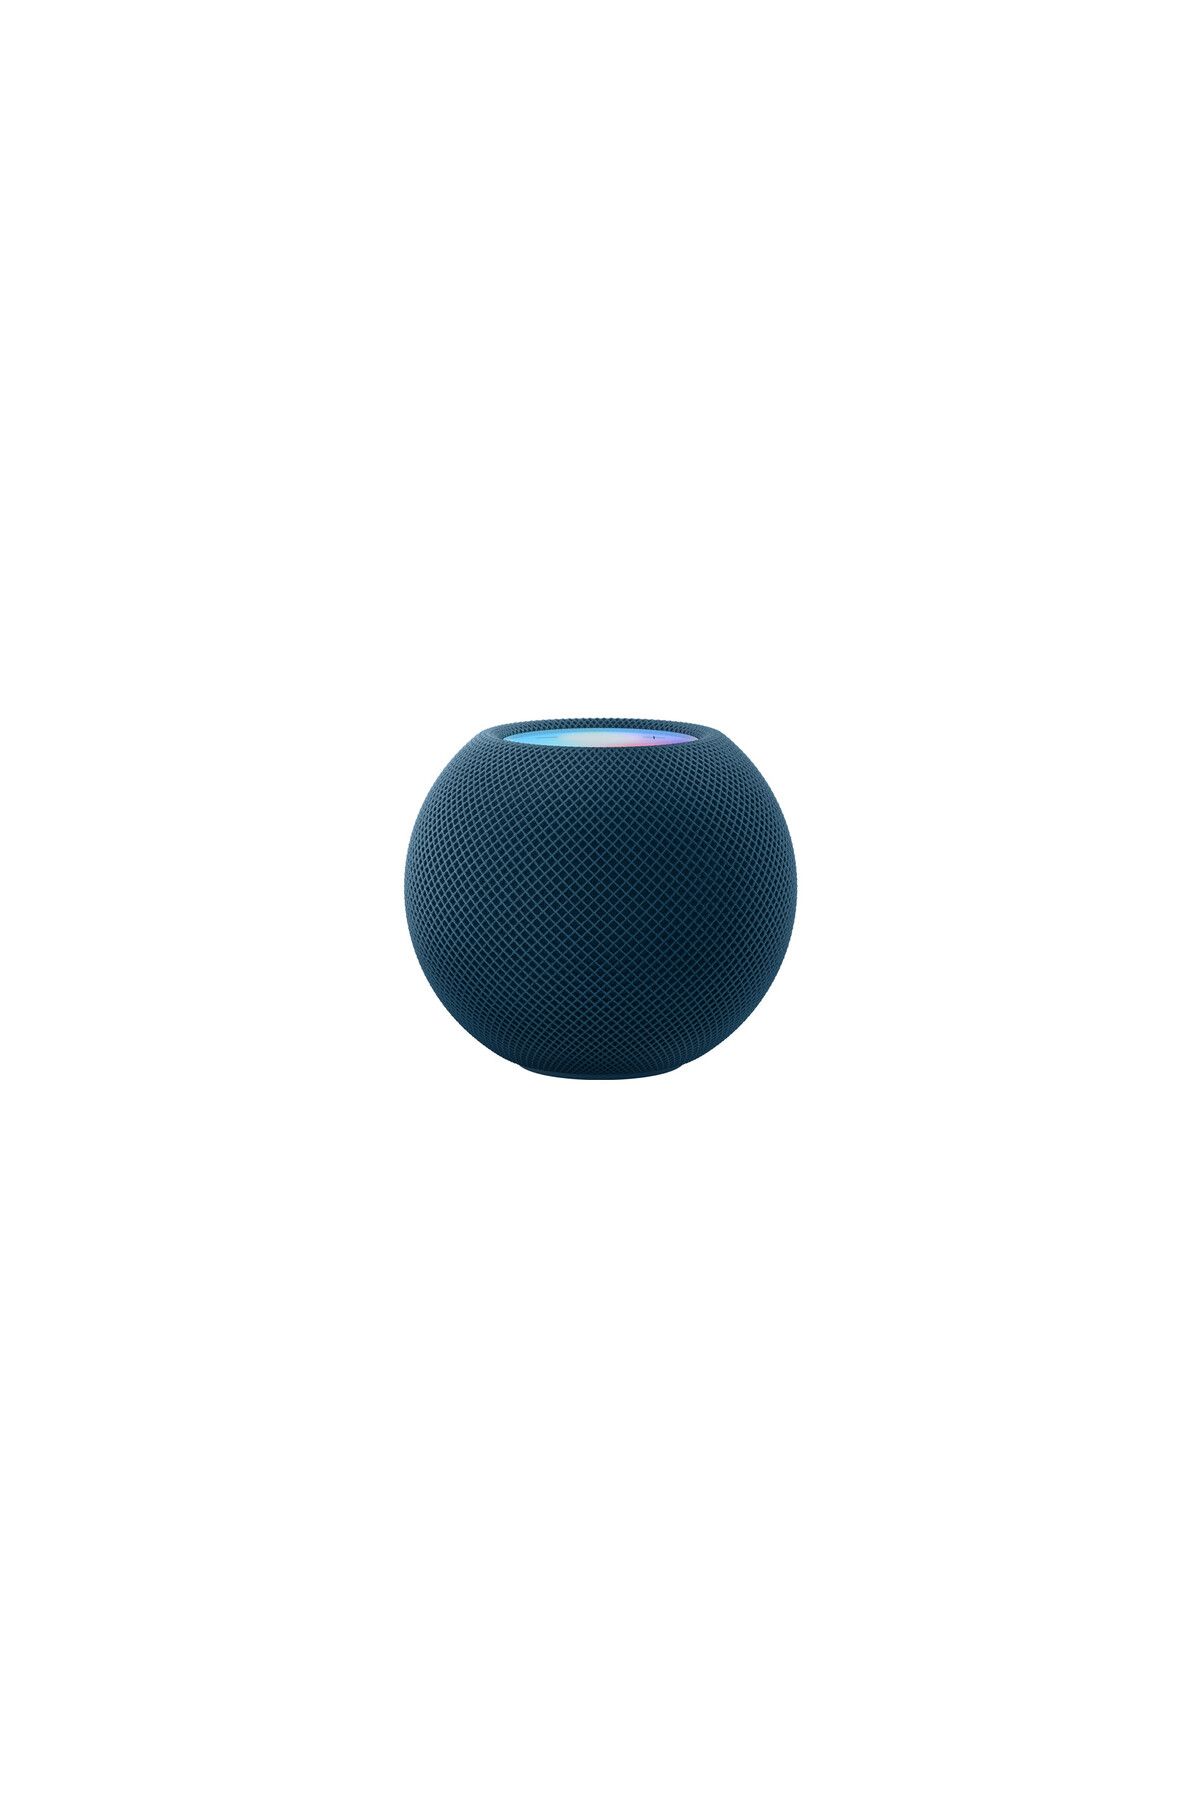 Apple HomePod mini -Mavi